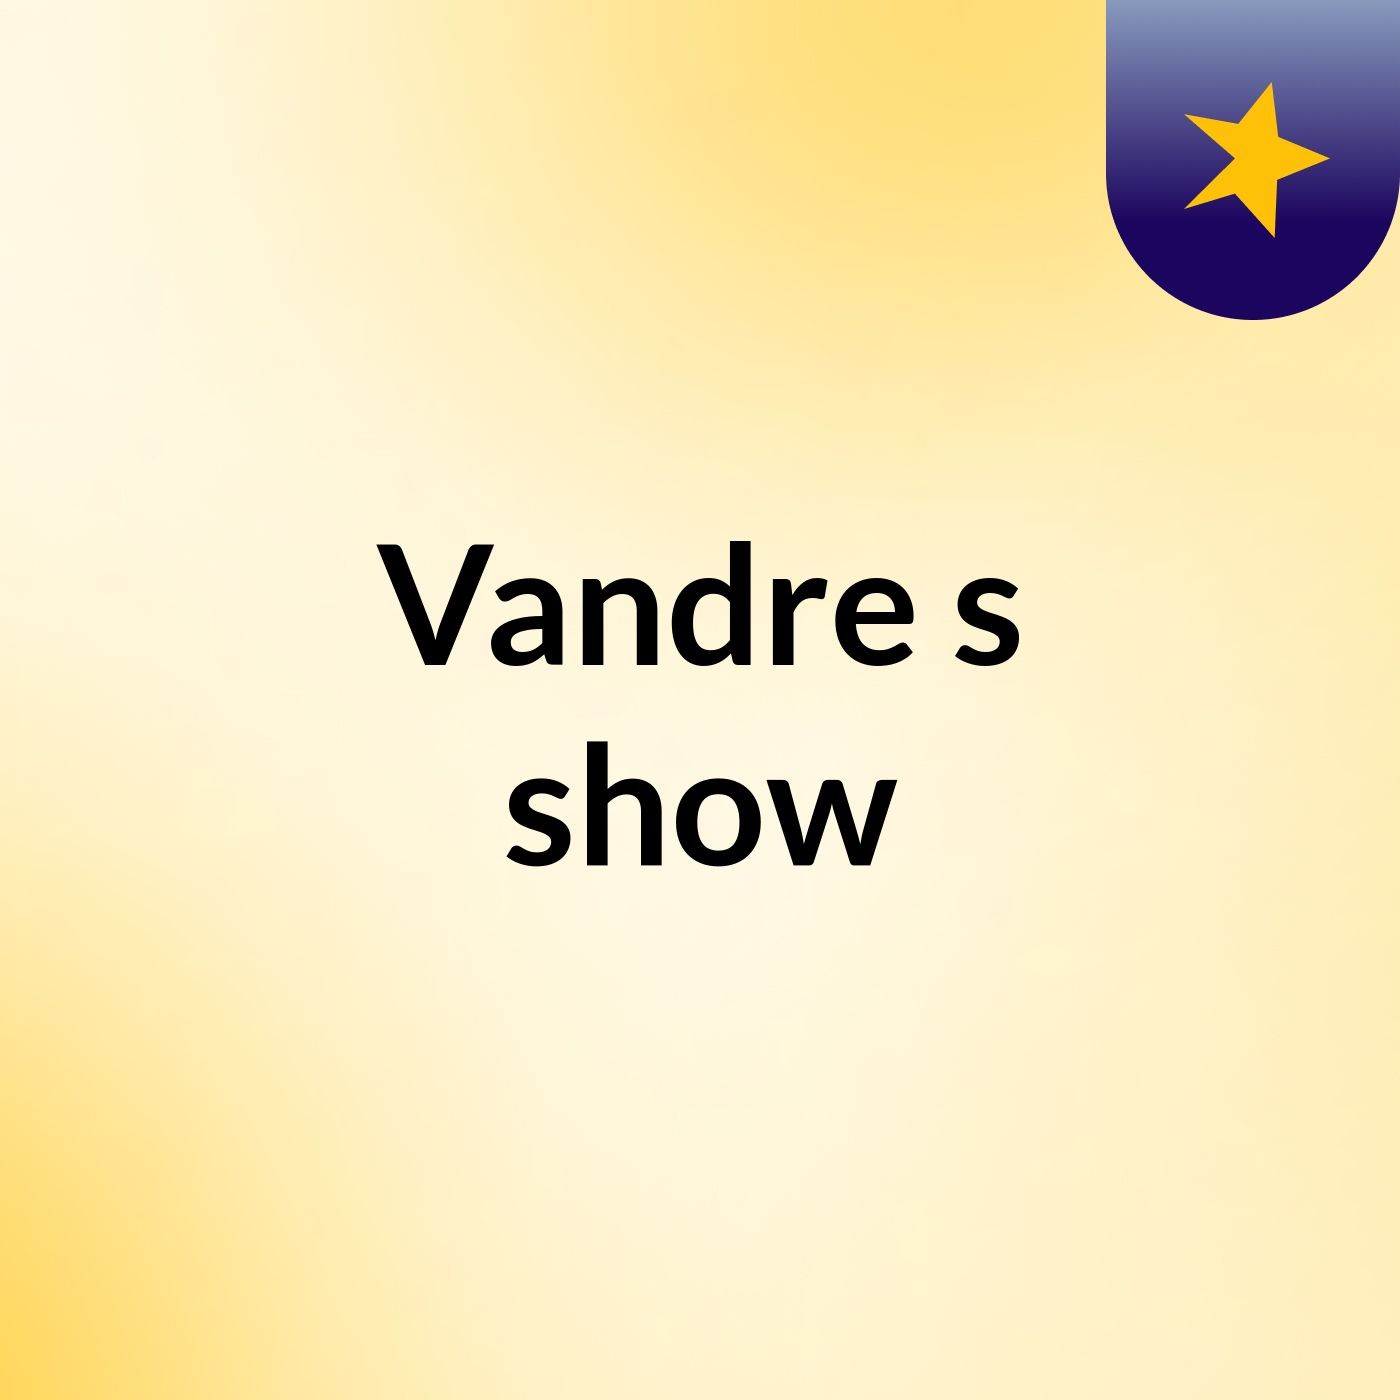 Vandre's show